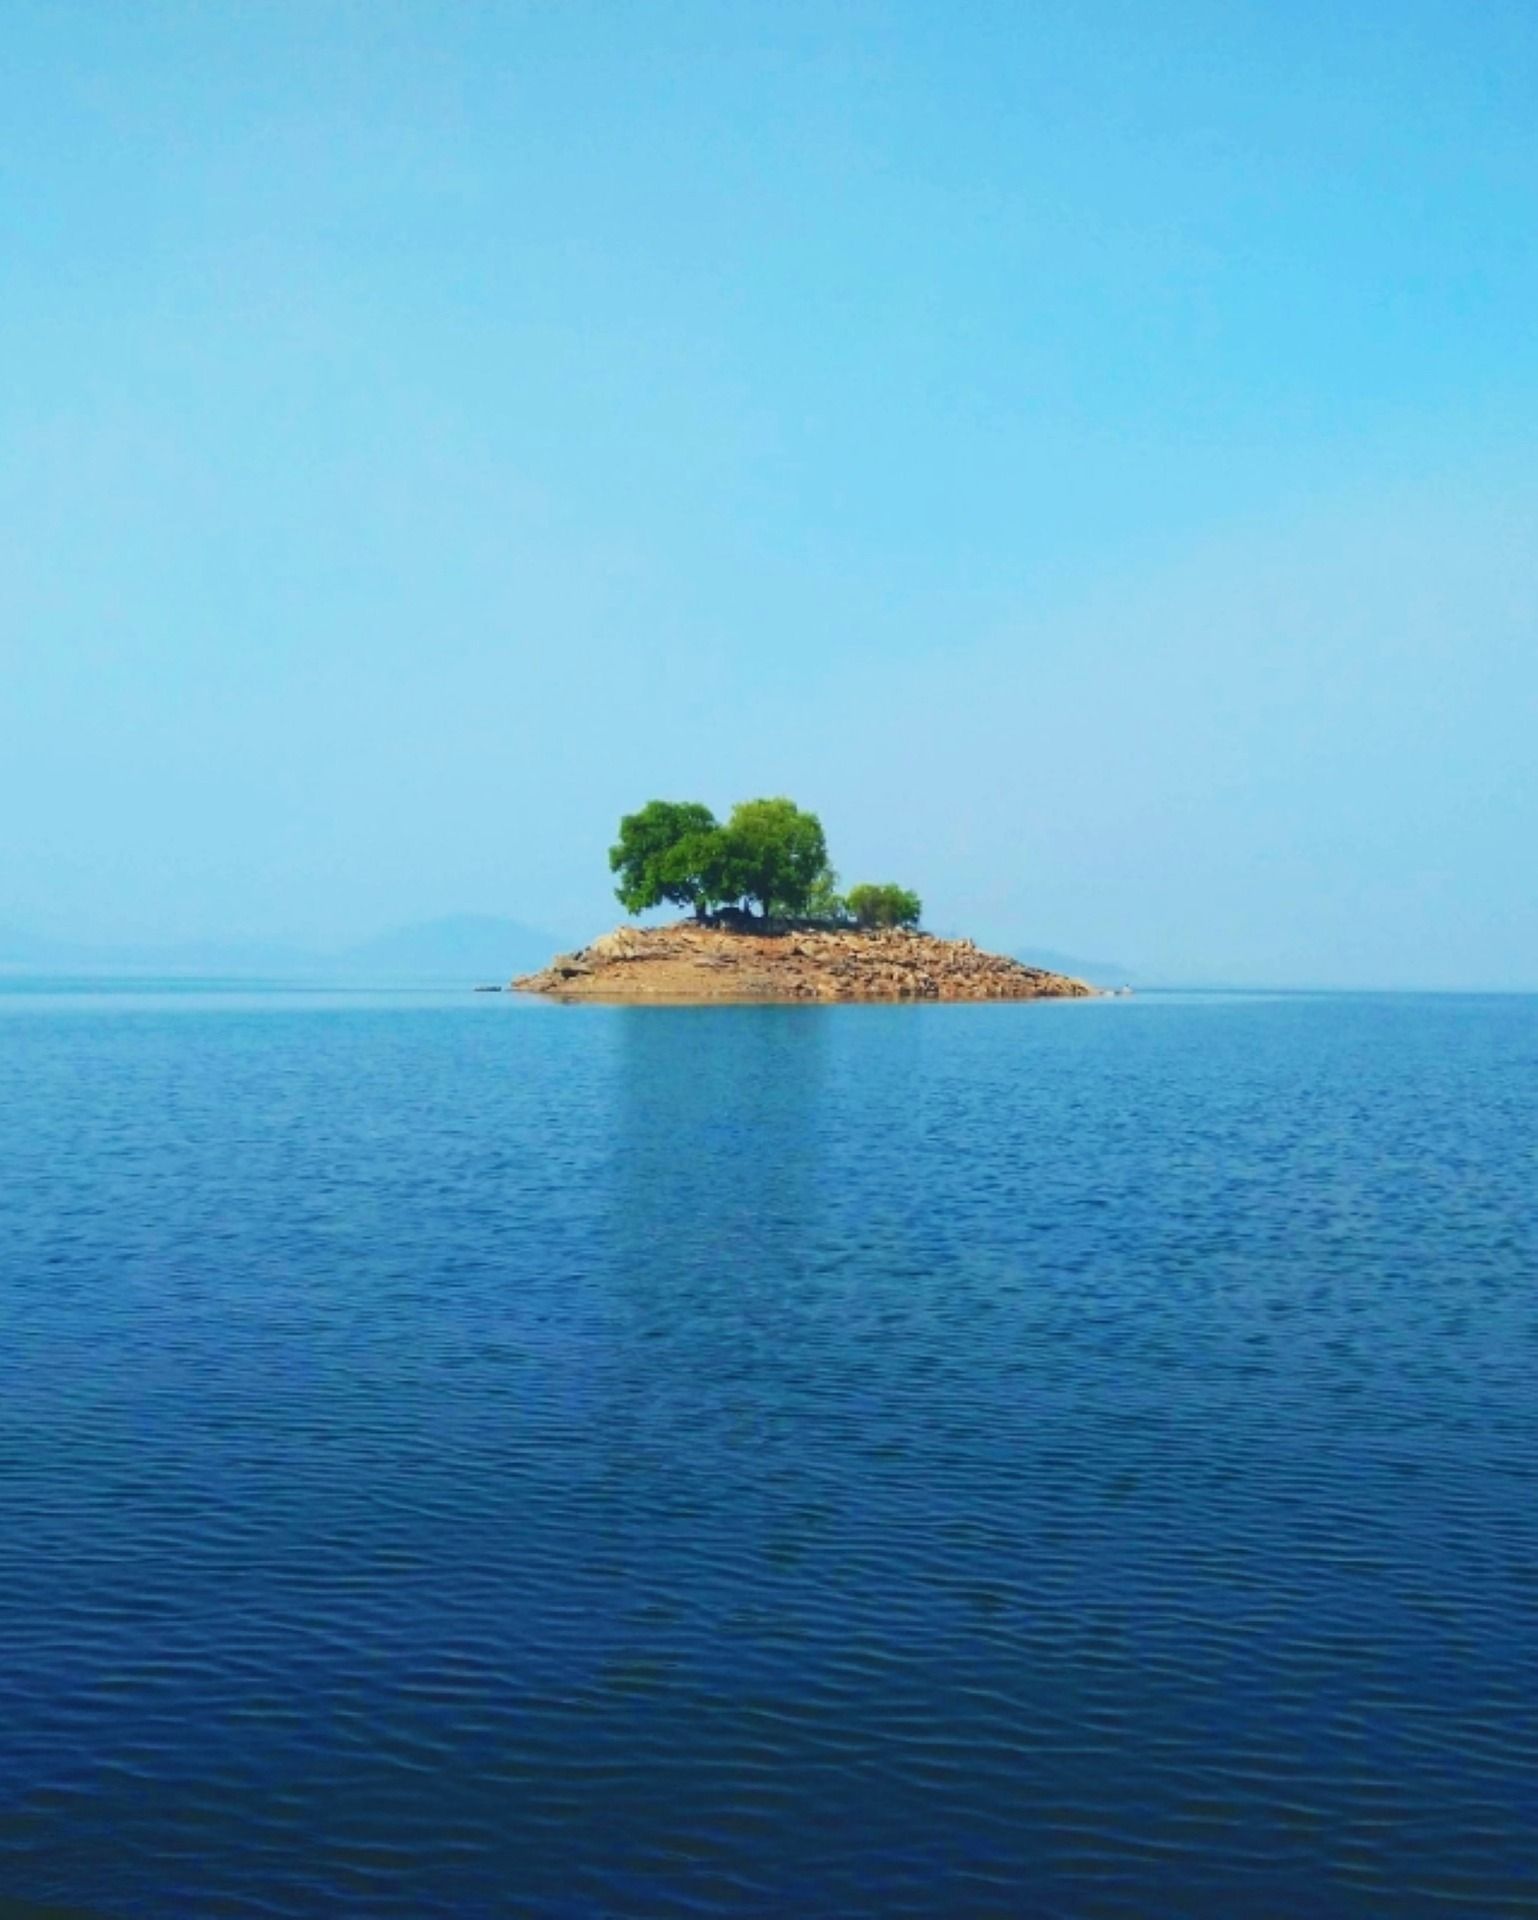 une toute petite île en pleine mer - Image par Debaudh Majee de https://pixabay.com/fr/photos/%C3%AEle-d%C3%A9sert%C3%A9-lac-r%C3%A9servoir-leau-5540231/